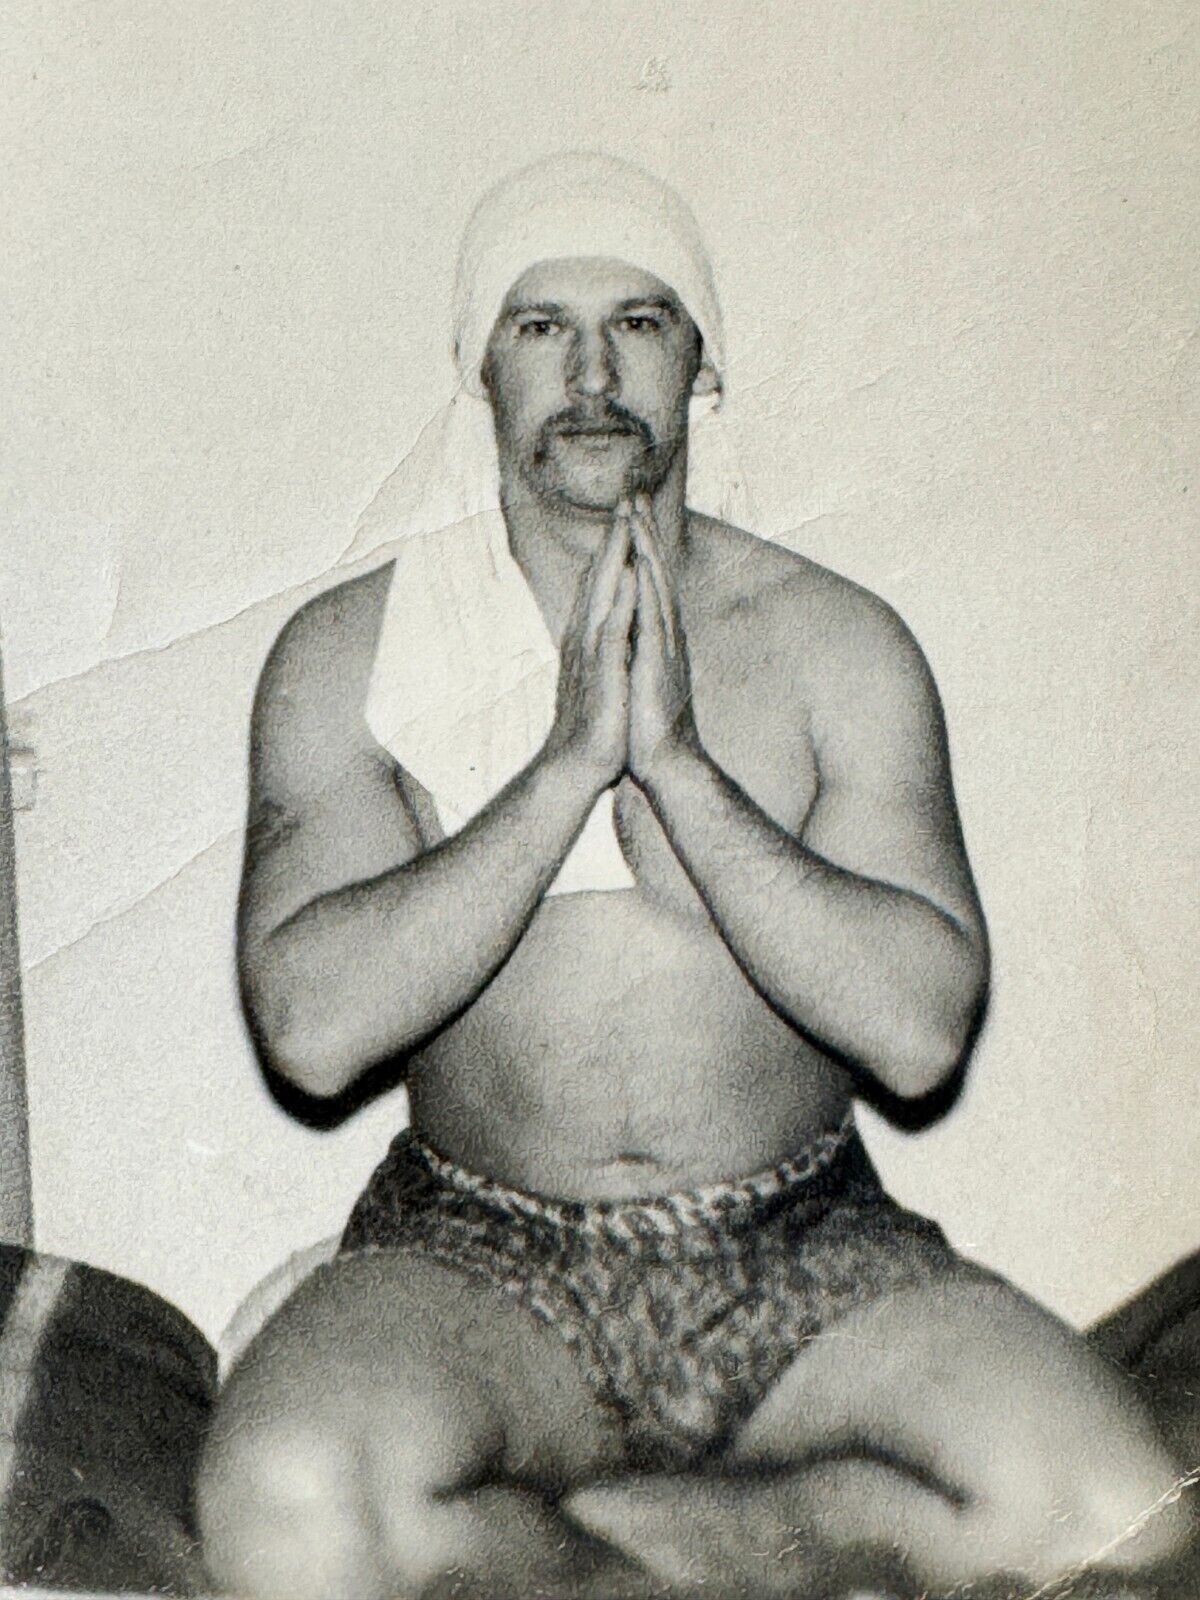 1970s Shirtless Muscular Man Lotus Pose Yogi Guy Gay Int Vintage Photo Snapshot